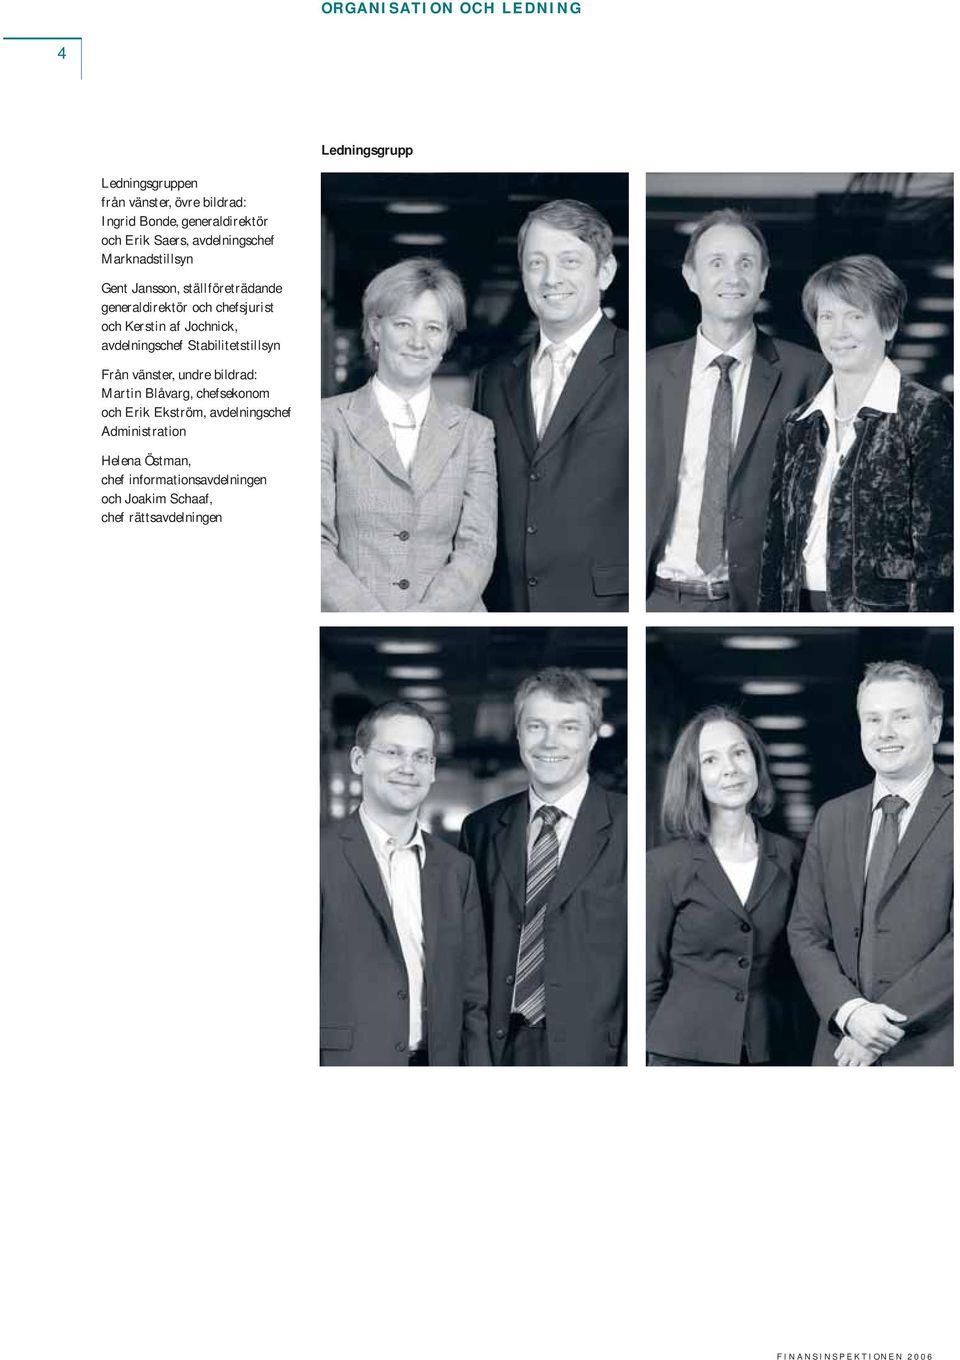 af Jochnick, avdelningschef Stabilitetstillsyn Från vänster, undre bildrad: Martin Blåvarg, chefsekonom och Erik